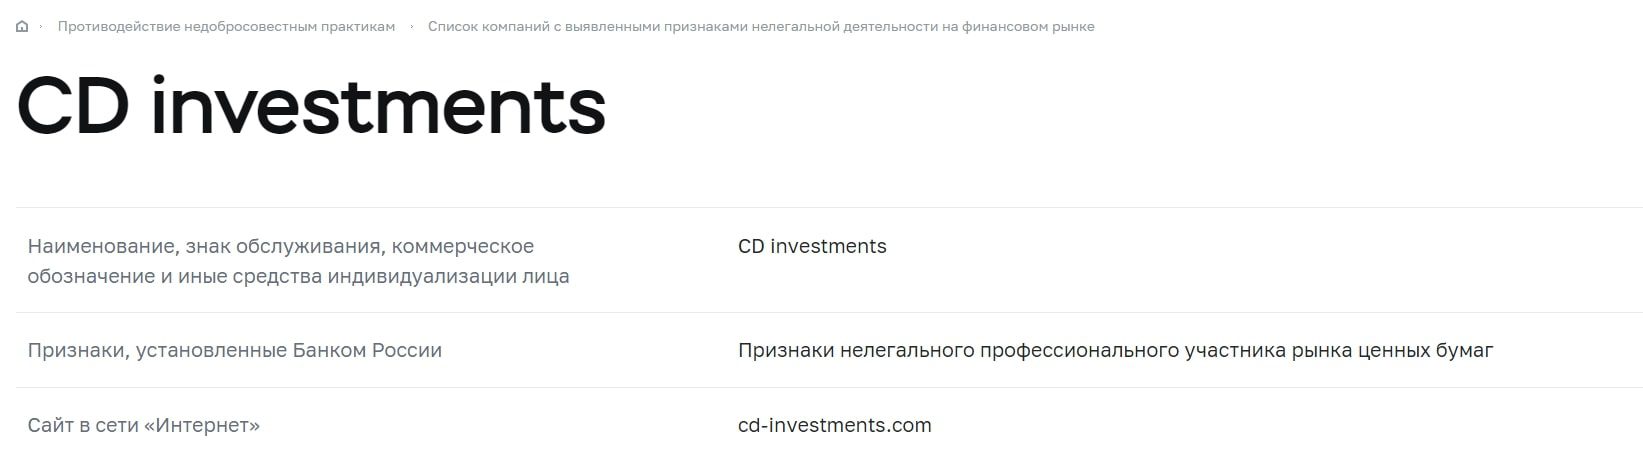 CD Investments отзывы пользователей